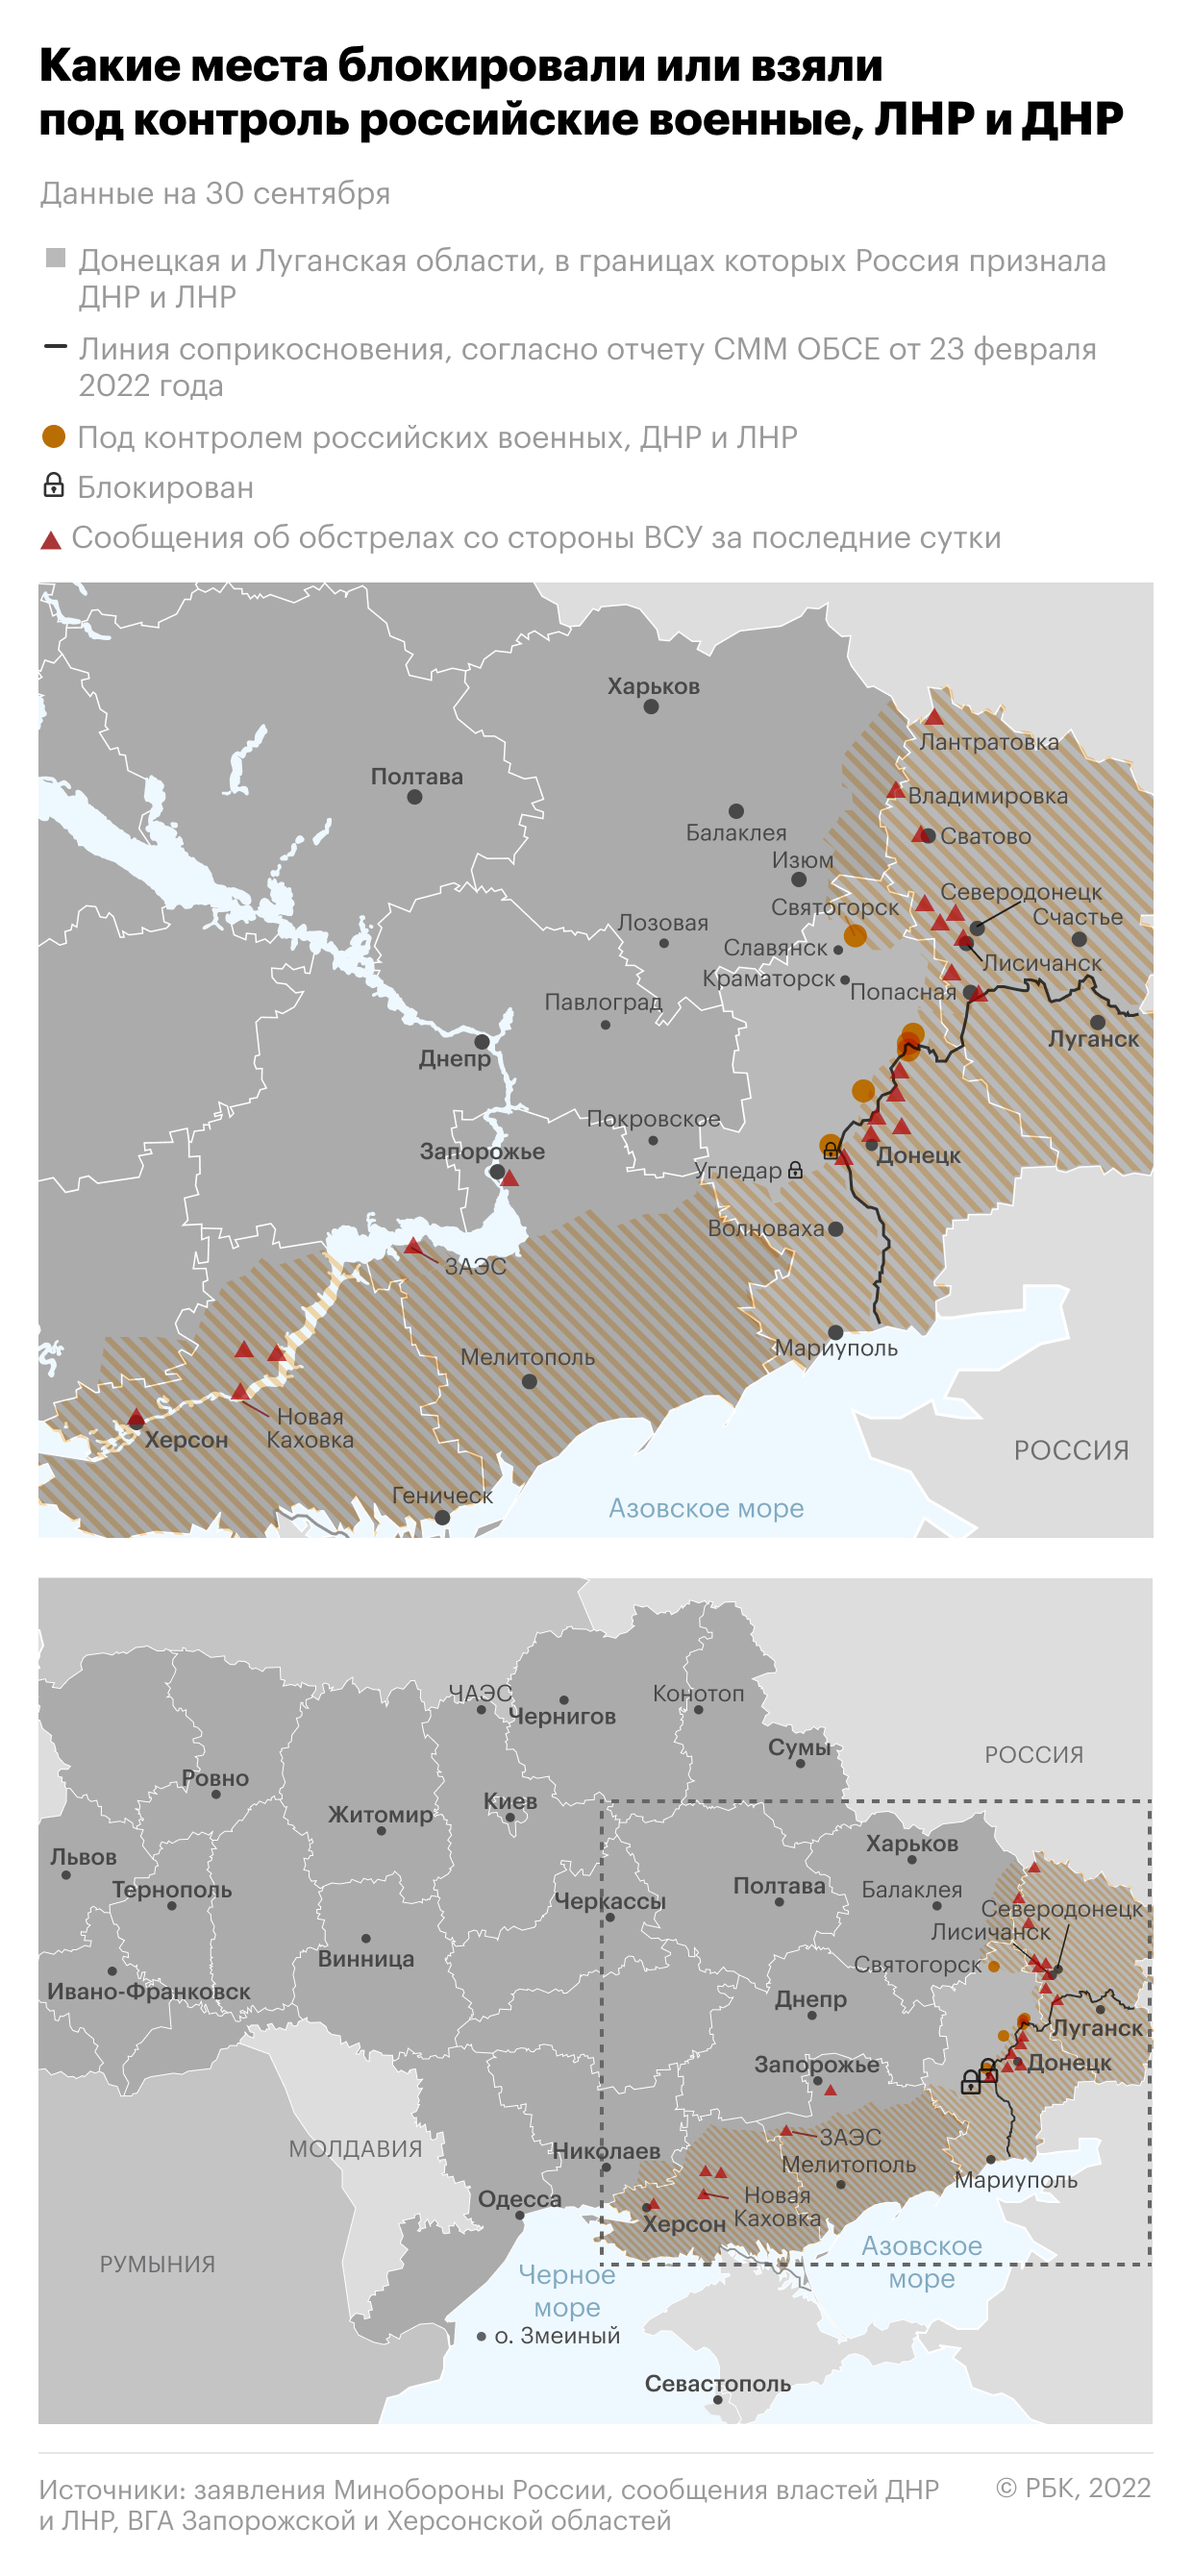 В Крыму и Севастополе оценили запасы бензина и продуктов"/>













